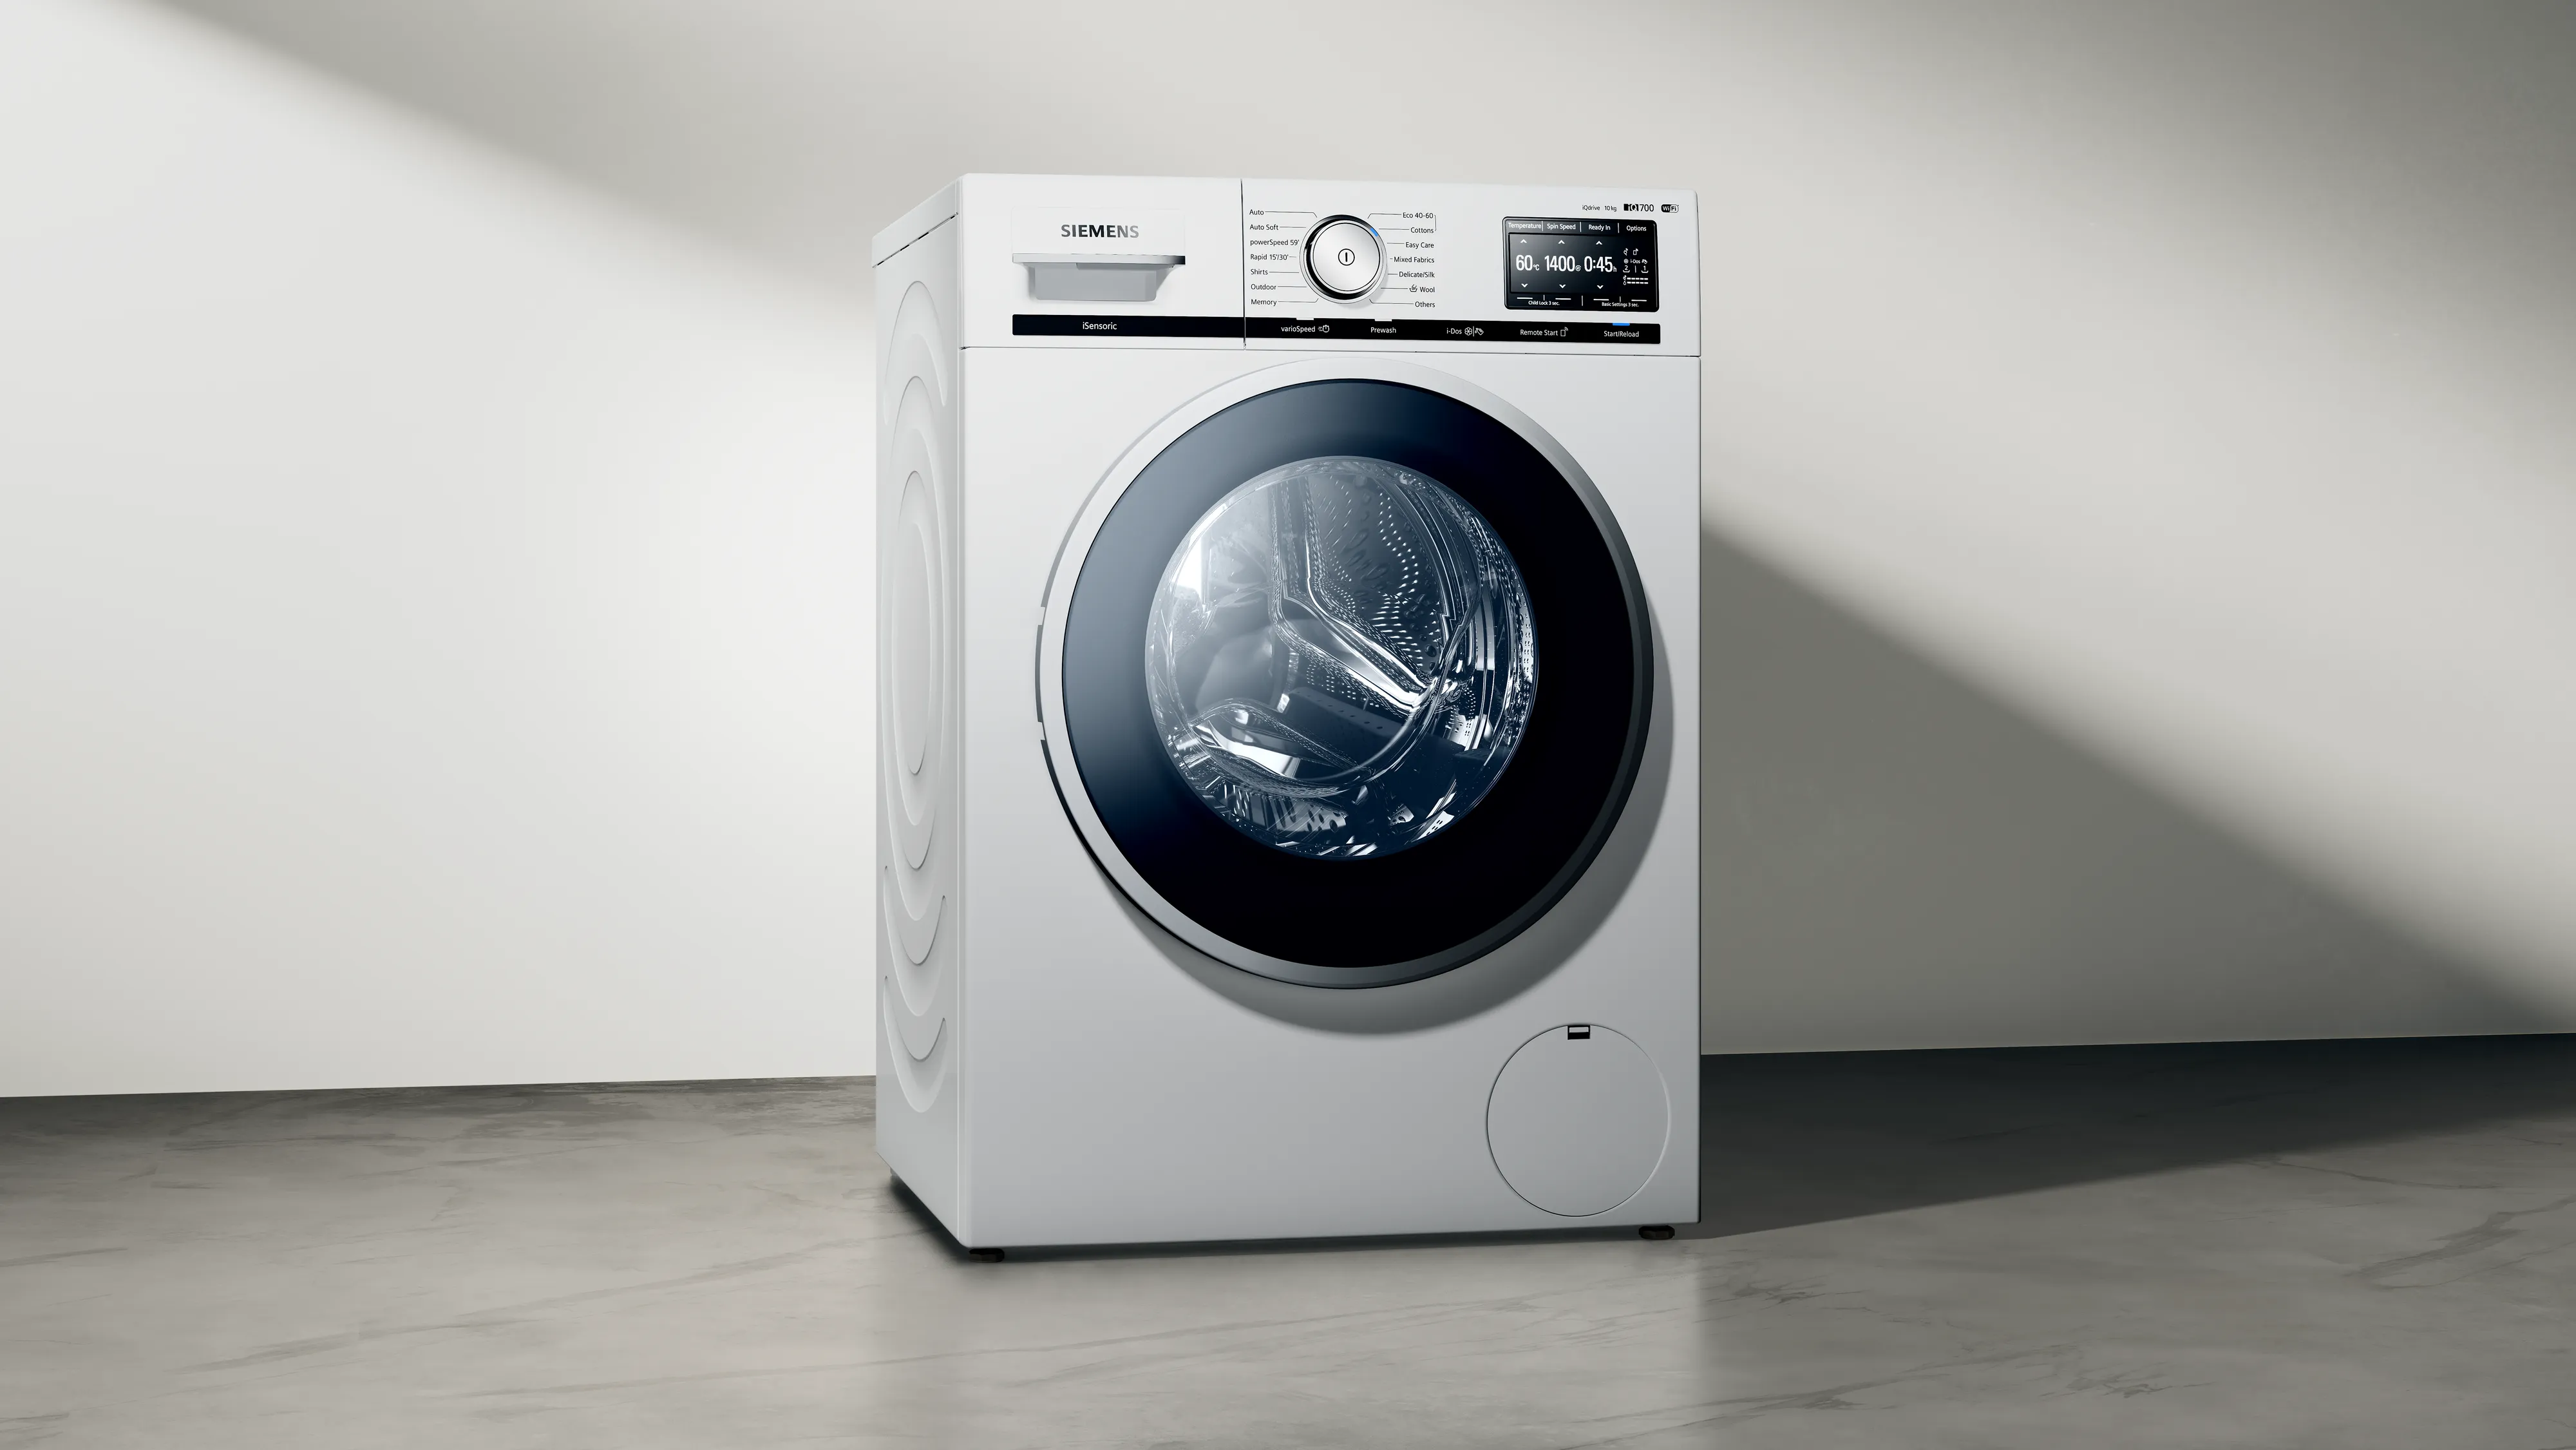 Frontlader-Waschmaschinen